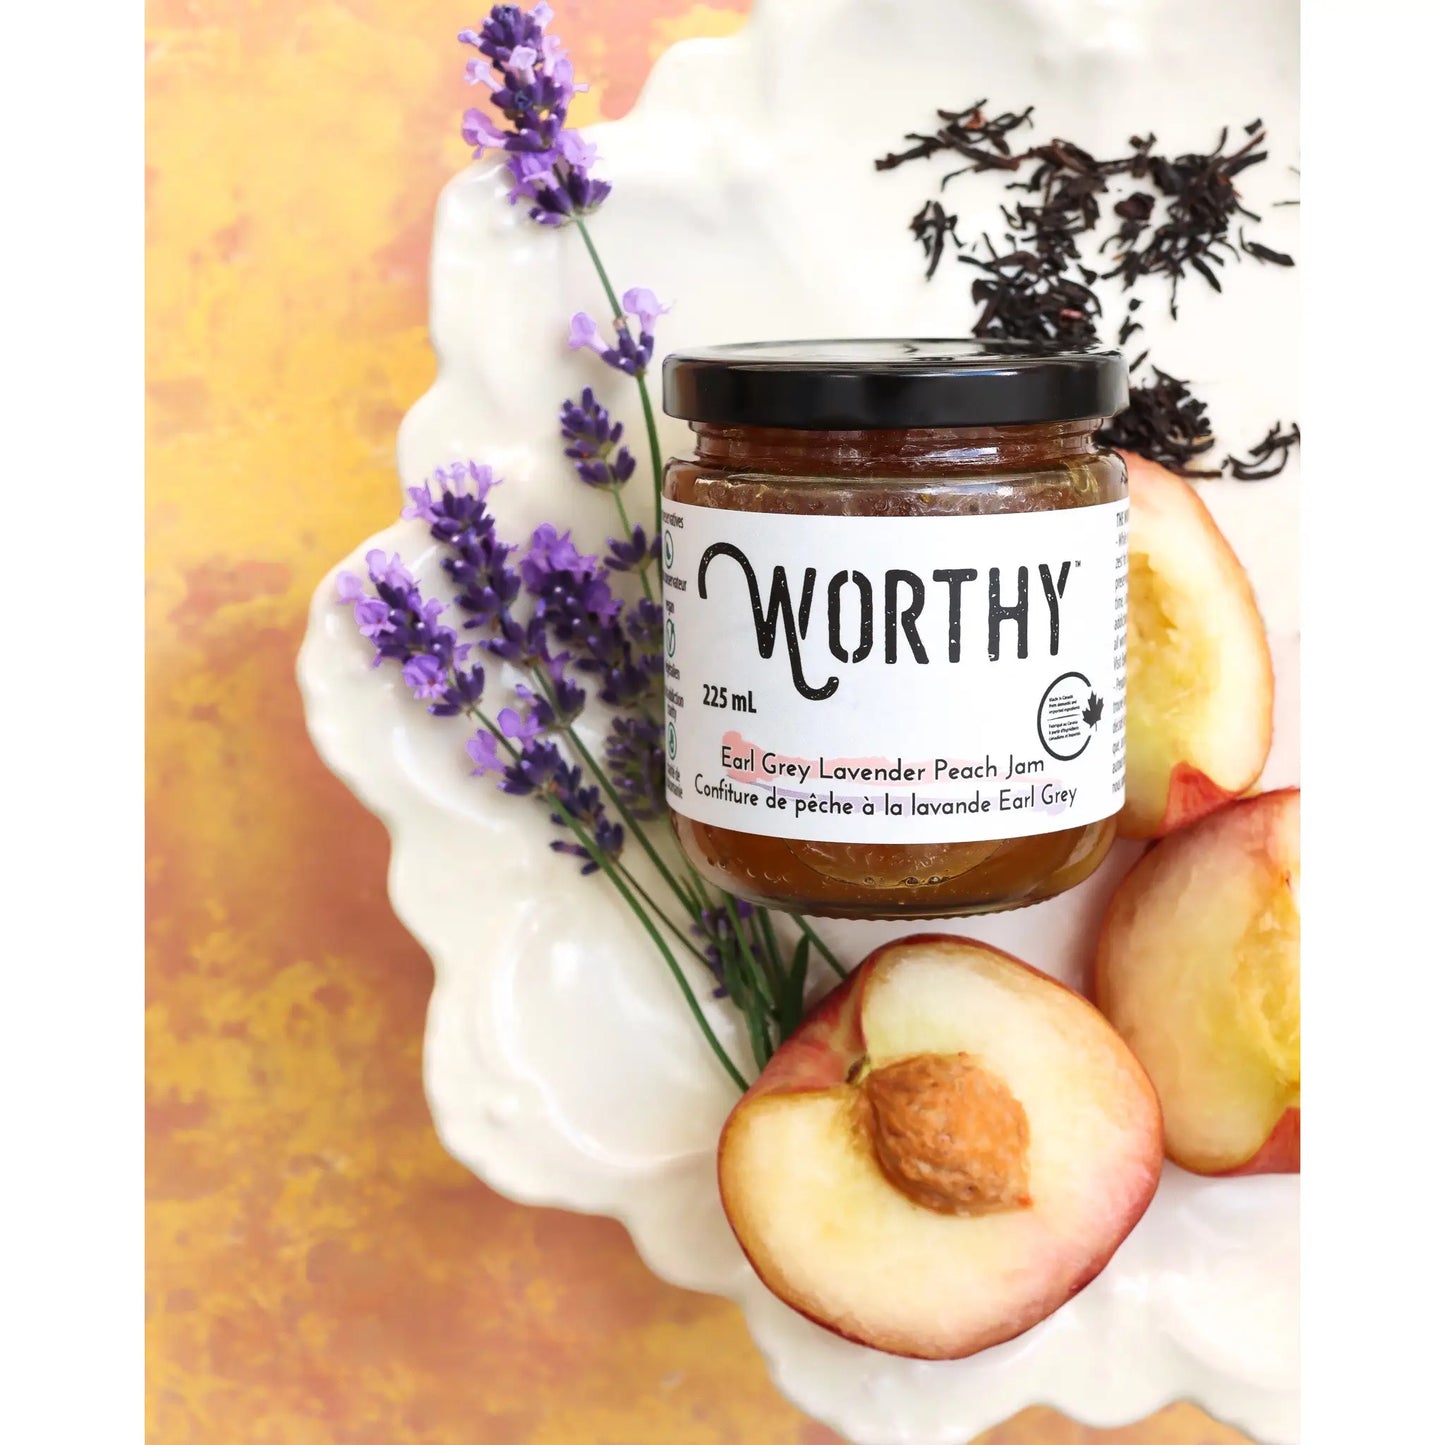 Worthy - Earl Grey Lavender Peach Jam